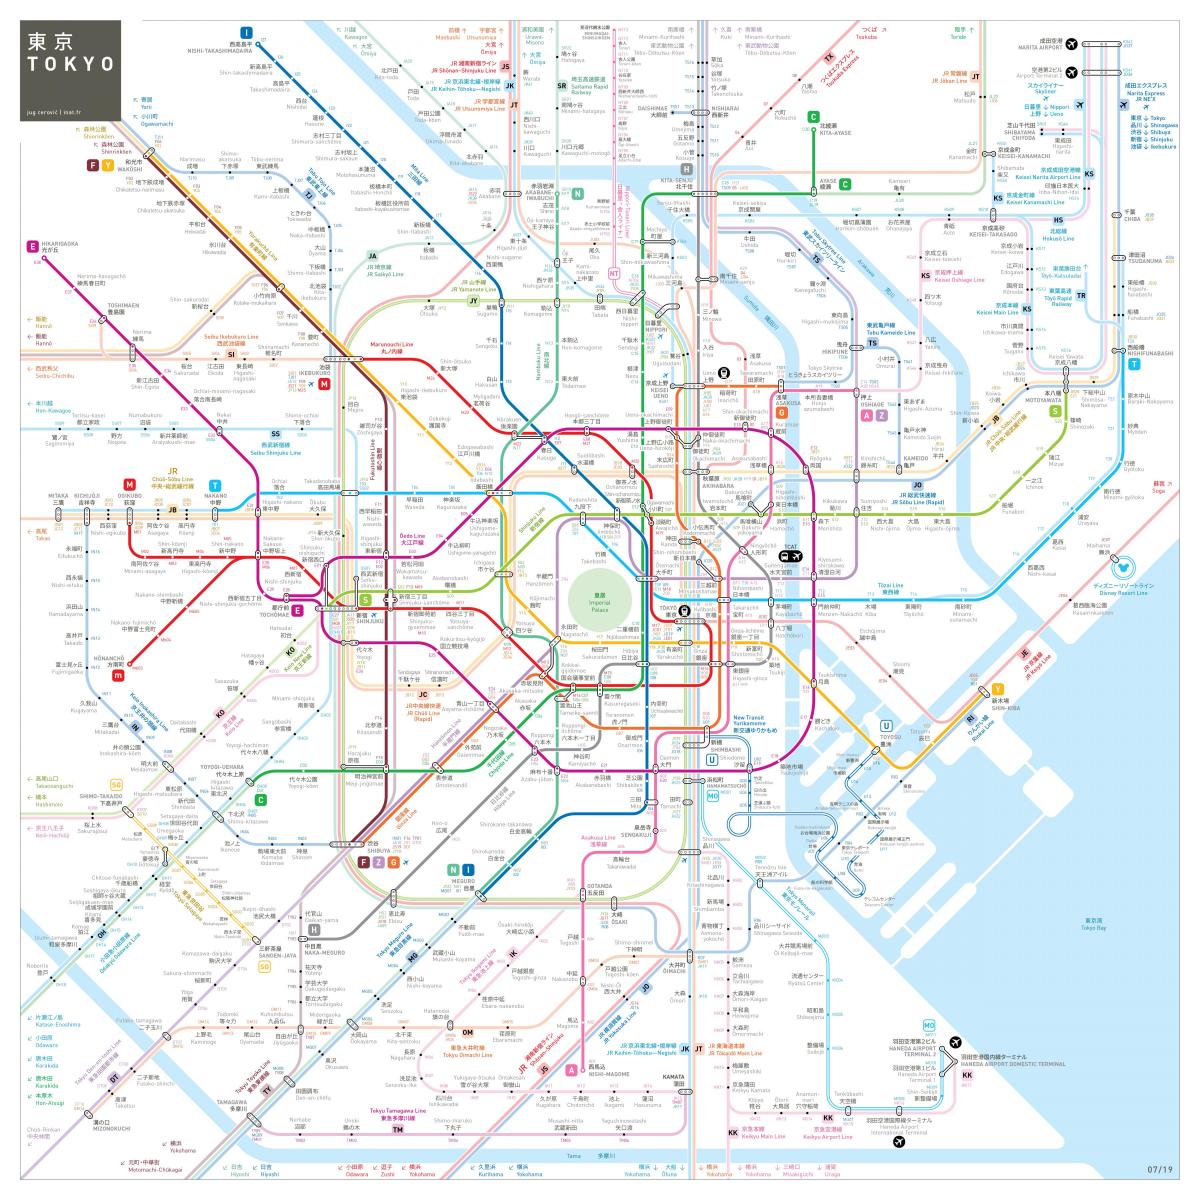 Tokyo subway station map